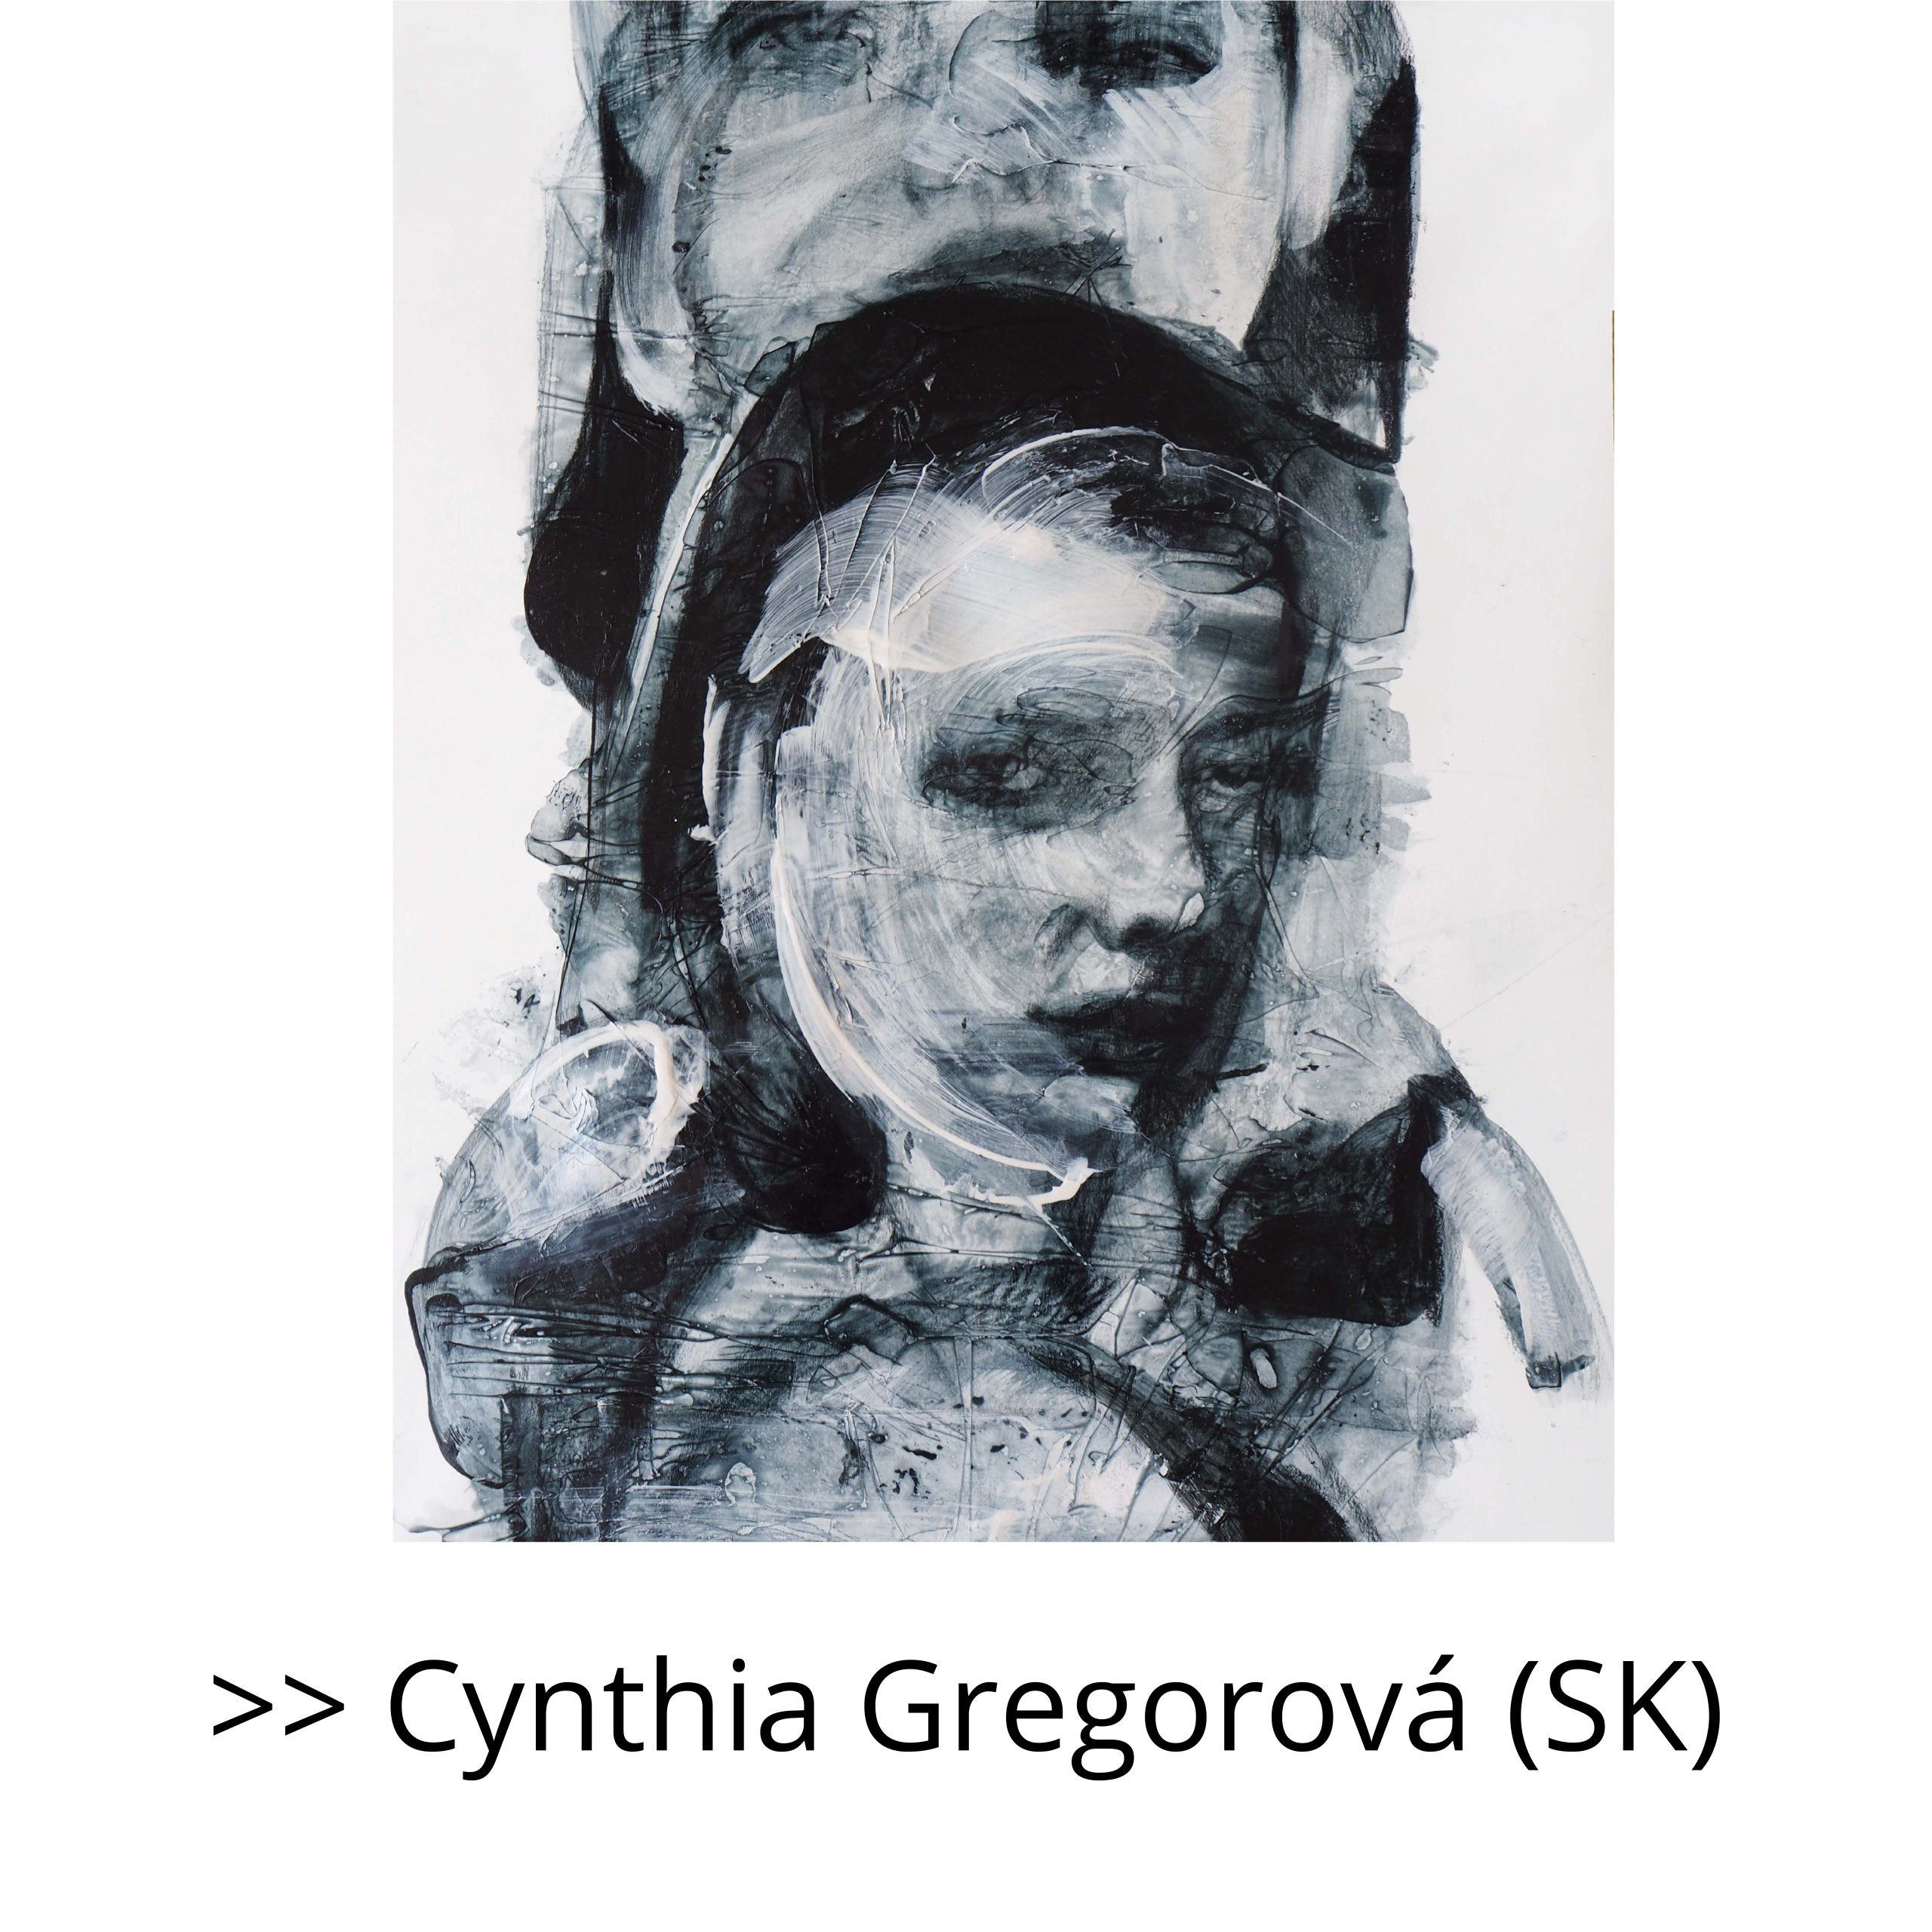 CYNTHIA GREGOROVÁ (SK)